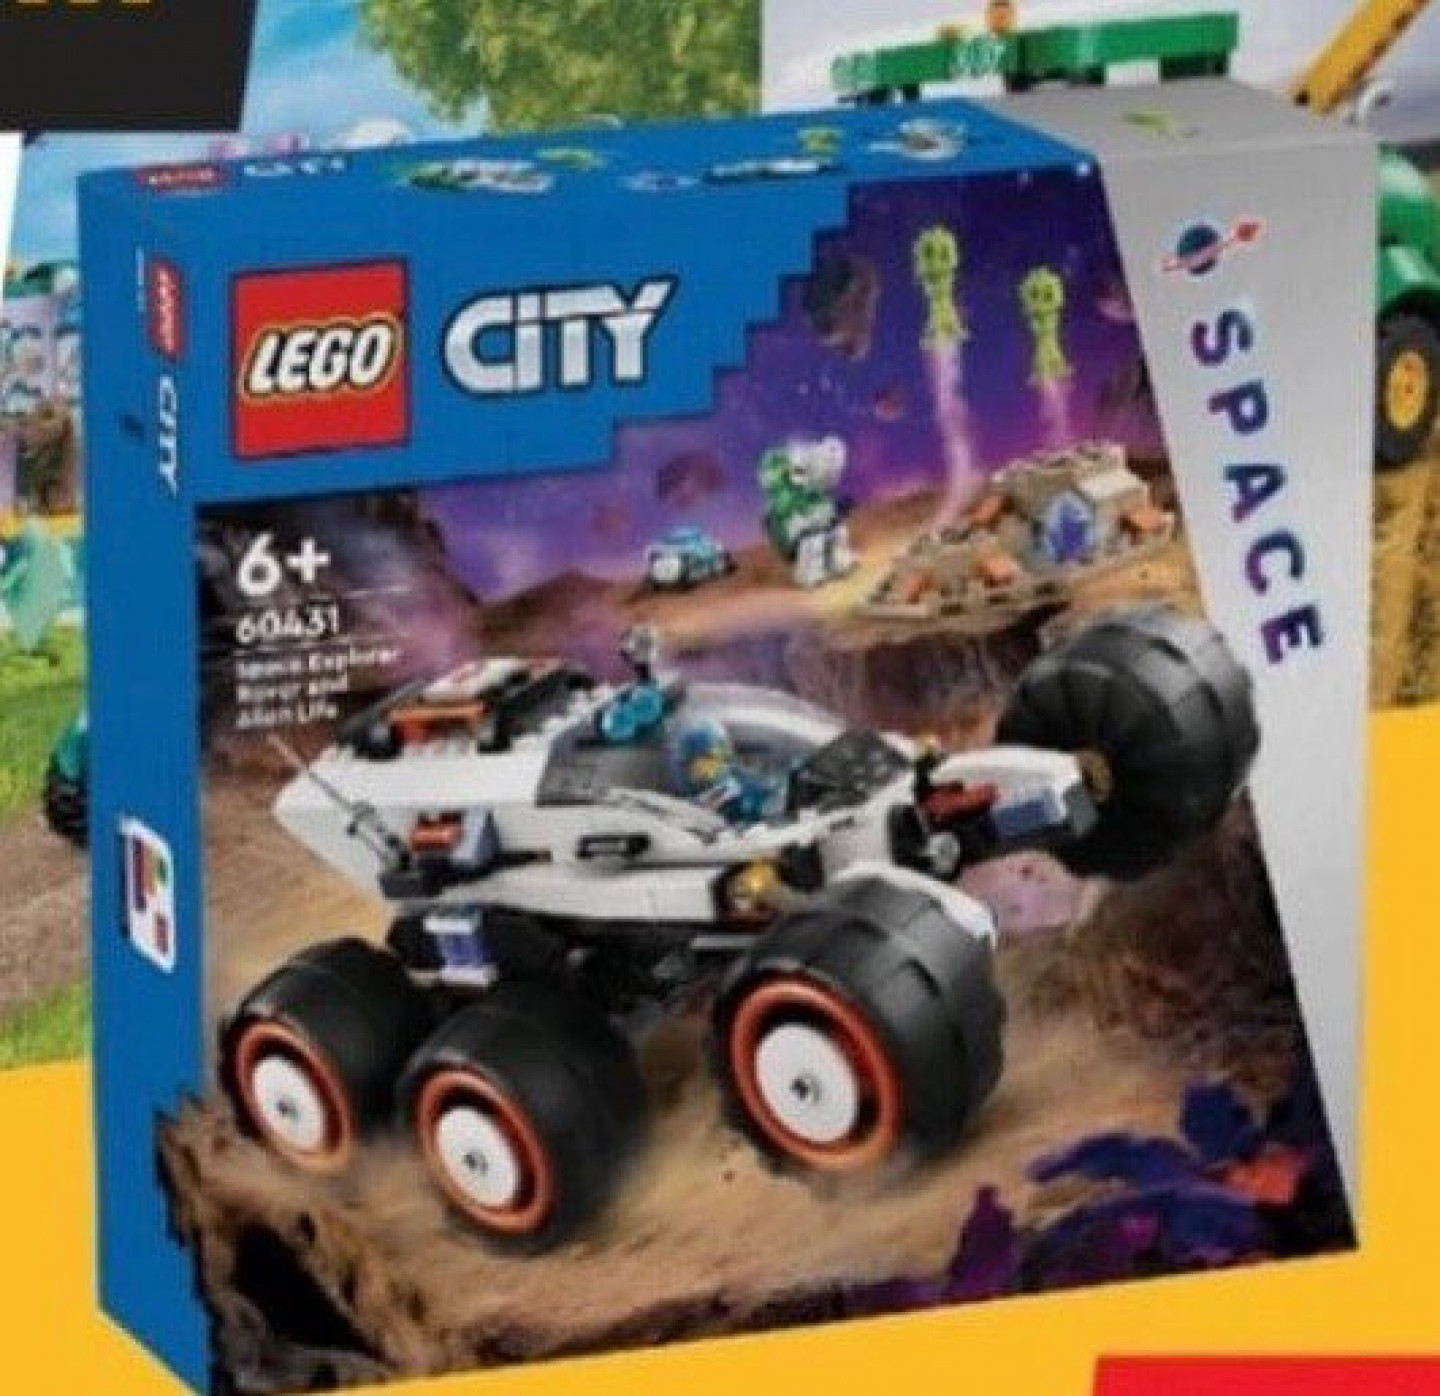 LEGO city 60431 ruimte ontdekking rover en alien leven gepland voor 1 januari